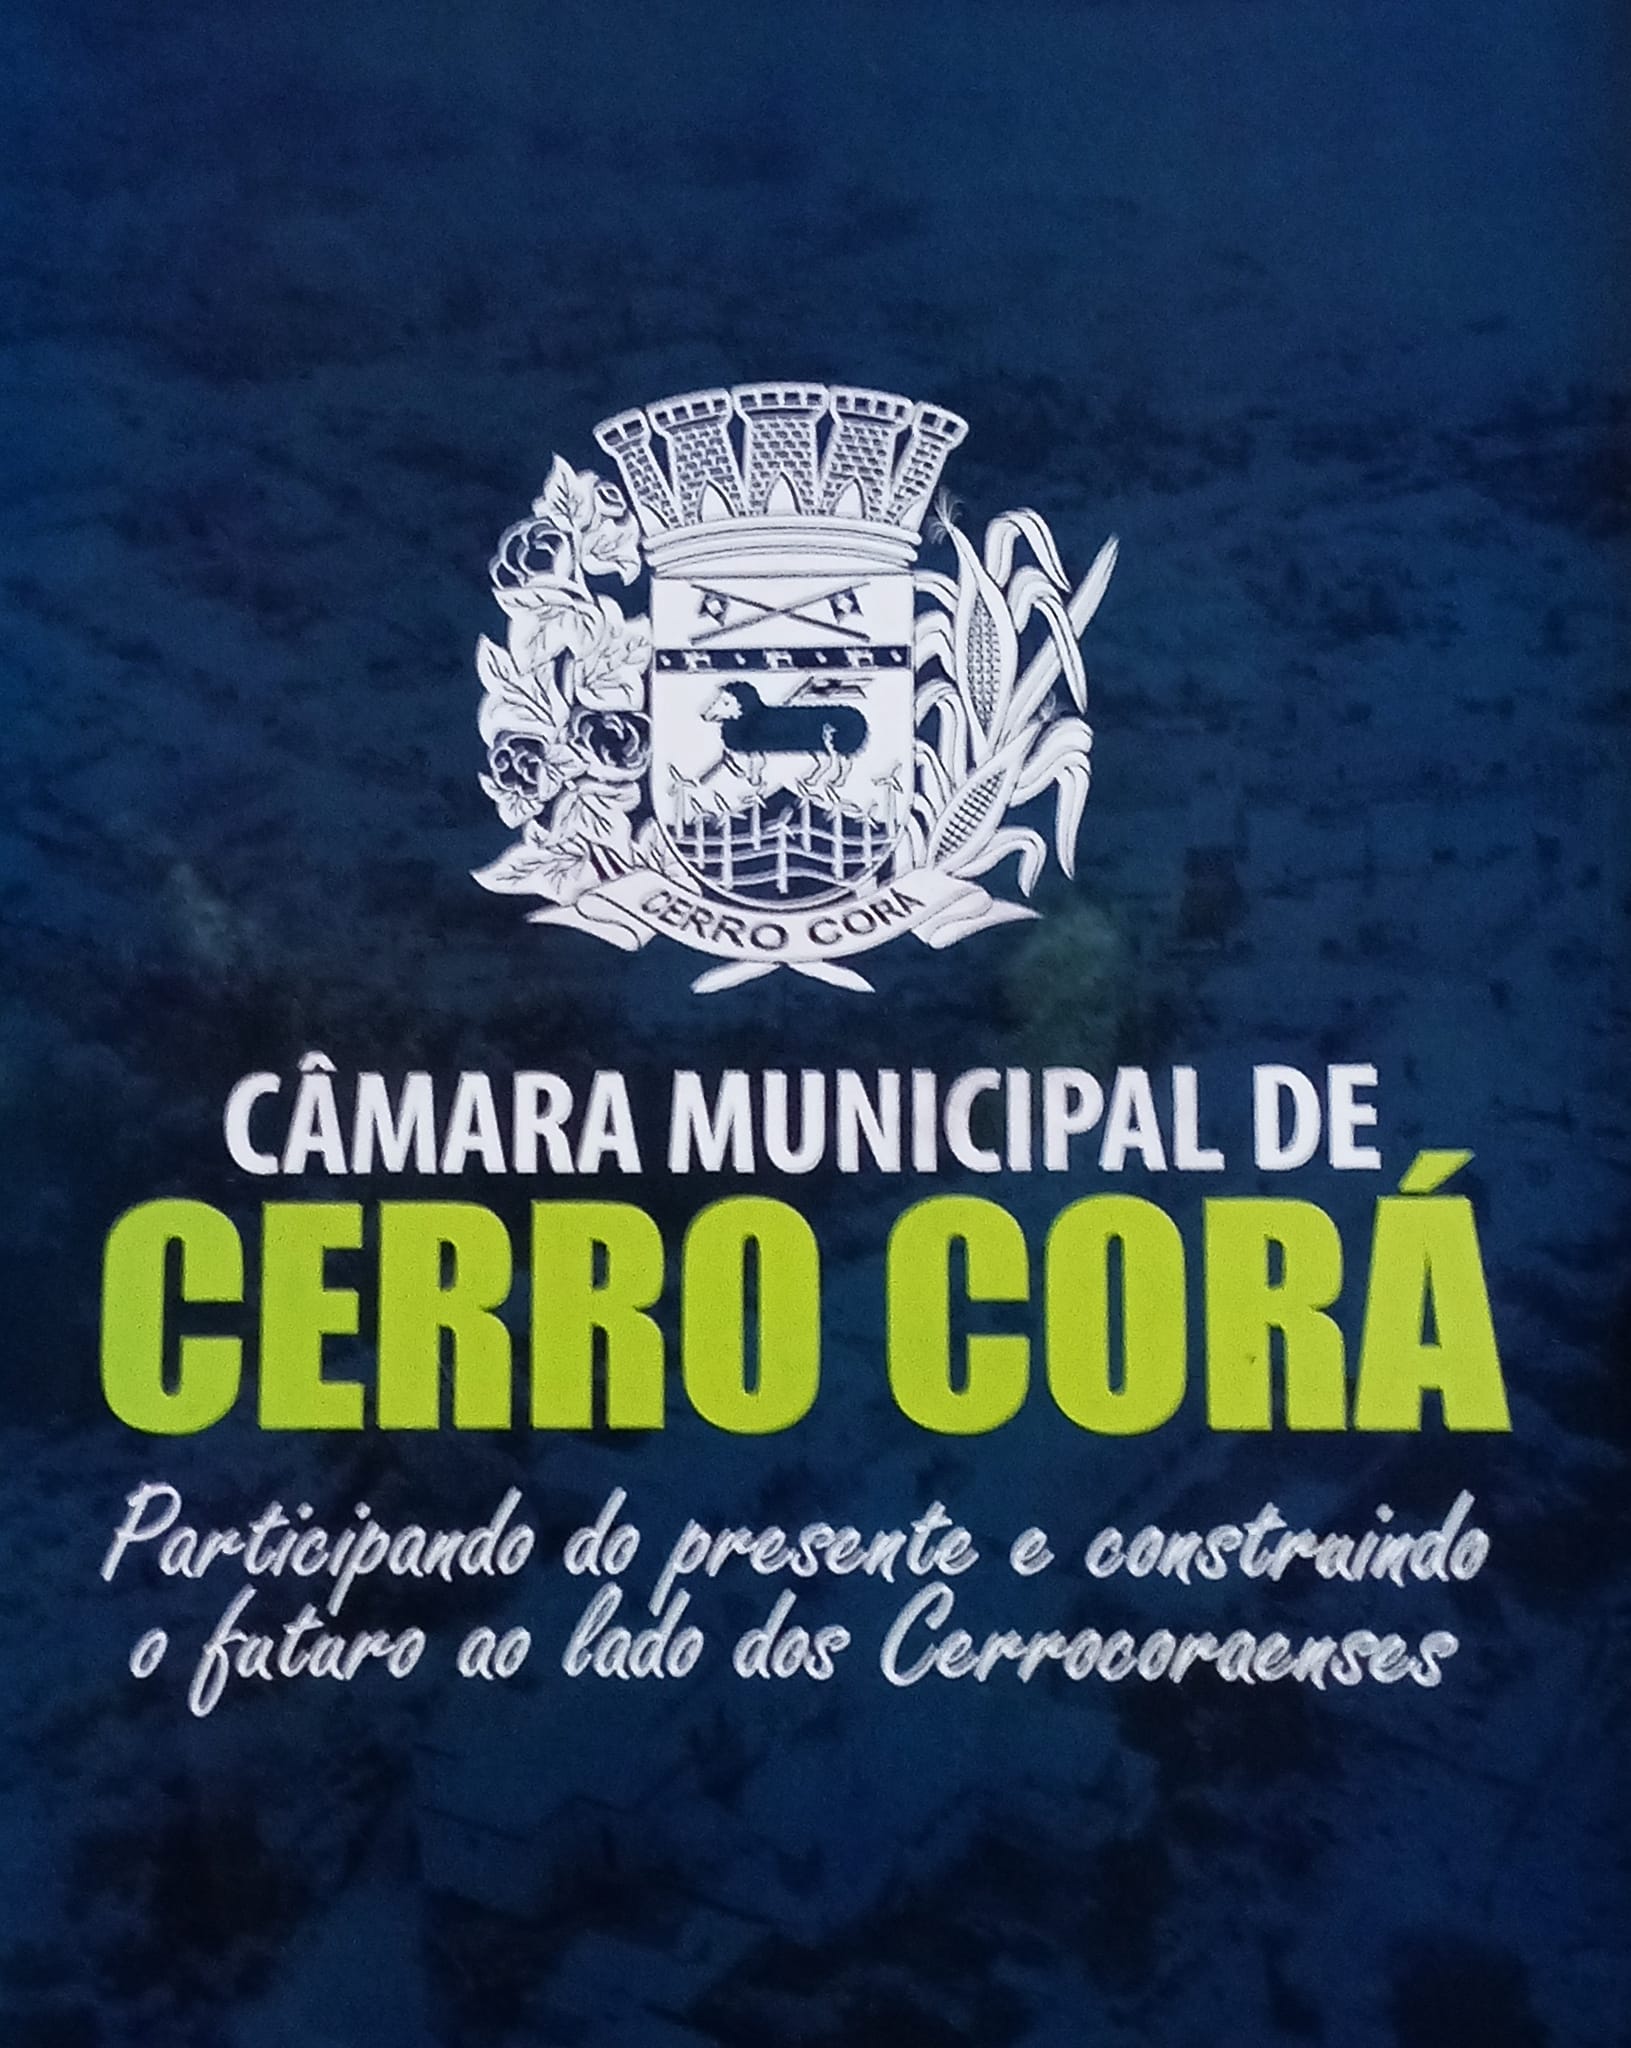 Veto do prefeito Novinho foi derrubado e o Brasão da bandeira de Cerro Corá ganhara imagens de maquinas de costura e torres eólica